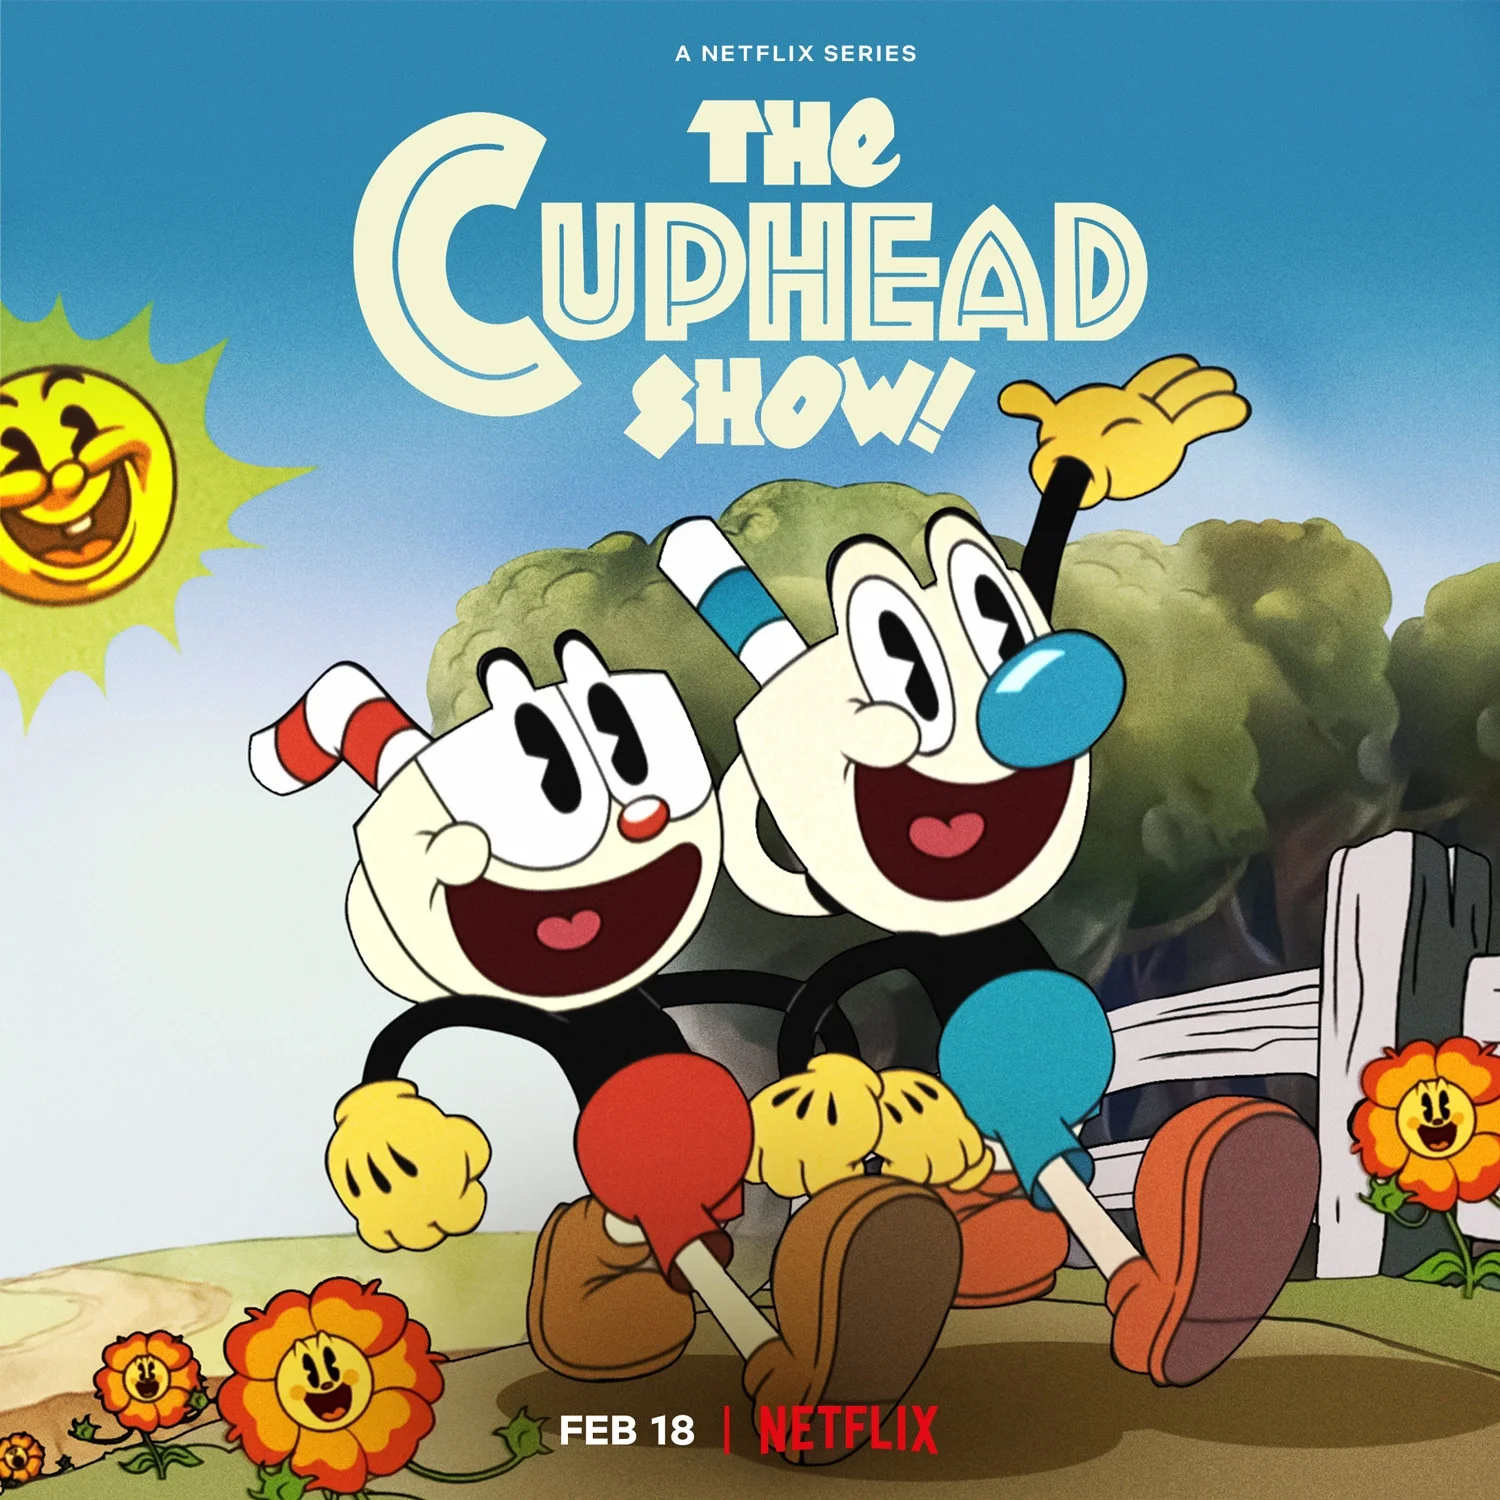 Мультсериал по Cuphead выйдет на Netflix 18 февраля — трейлер - фото 1